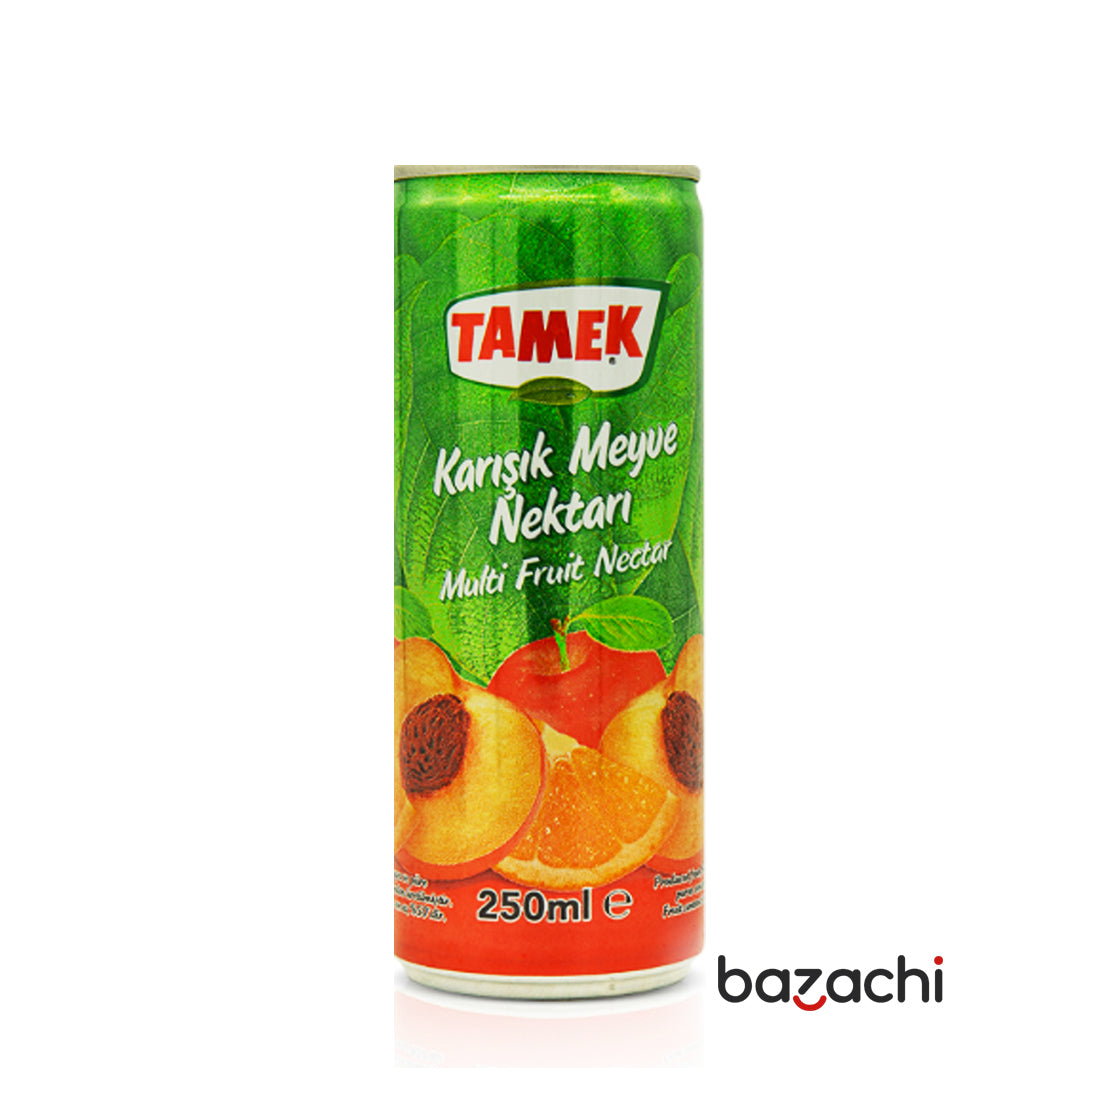 Tamek Mix Can Juice 250ml